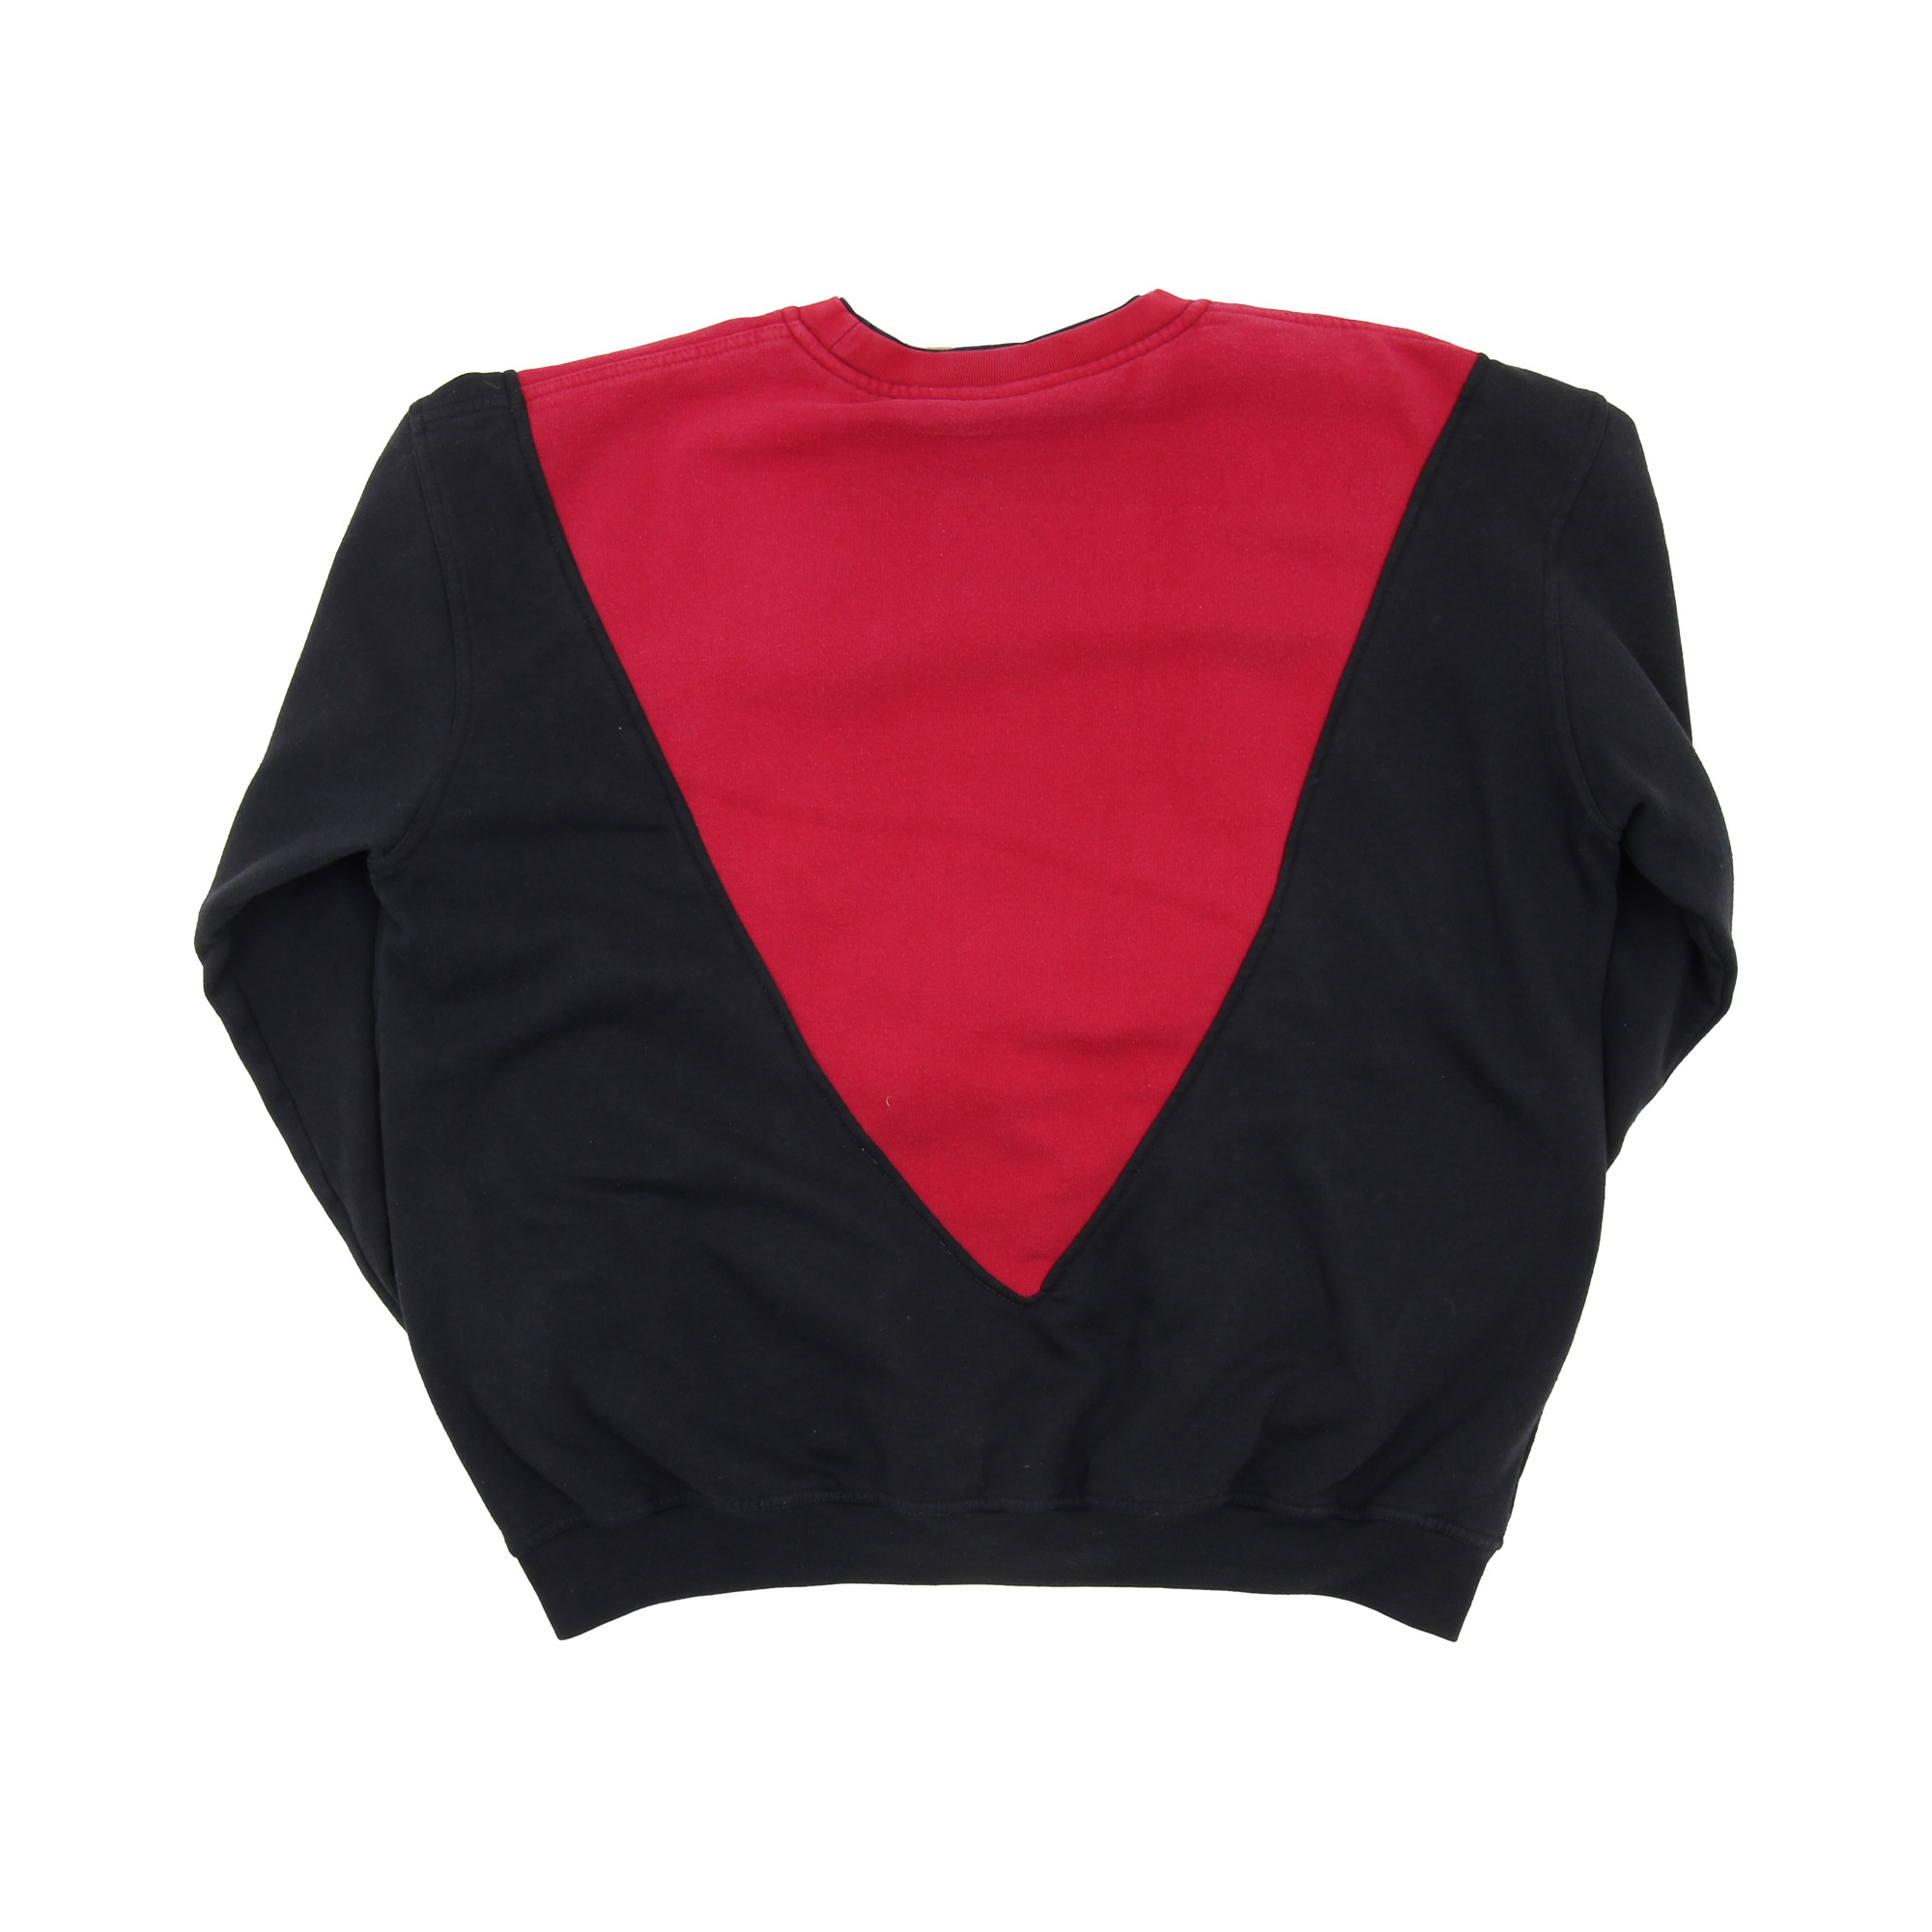 Calvin Klein Rework Sweatshirt -  L/XL